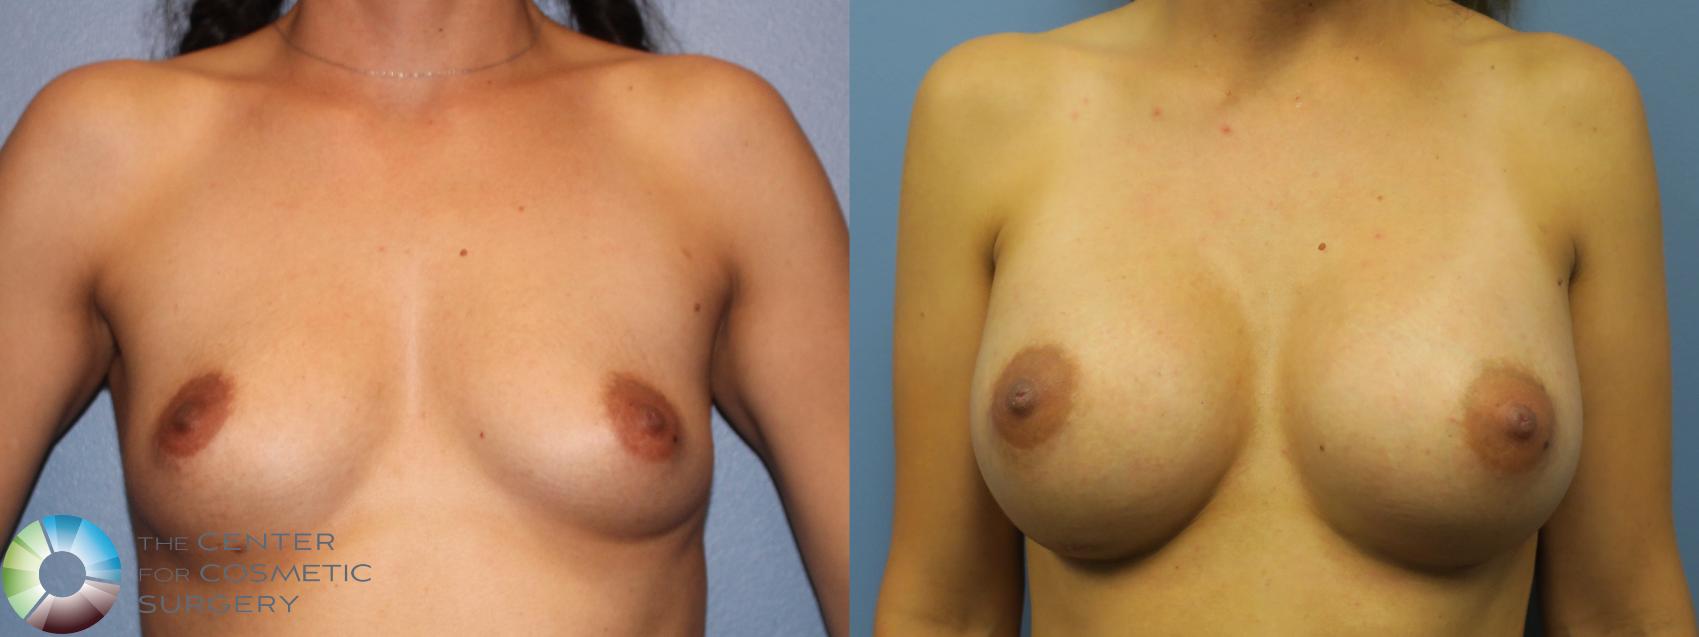 Best Natural Denver Breast Implants Augmentation